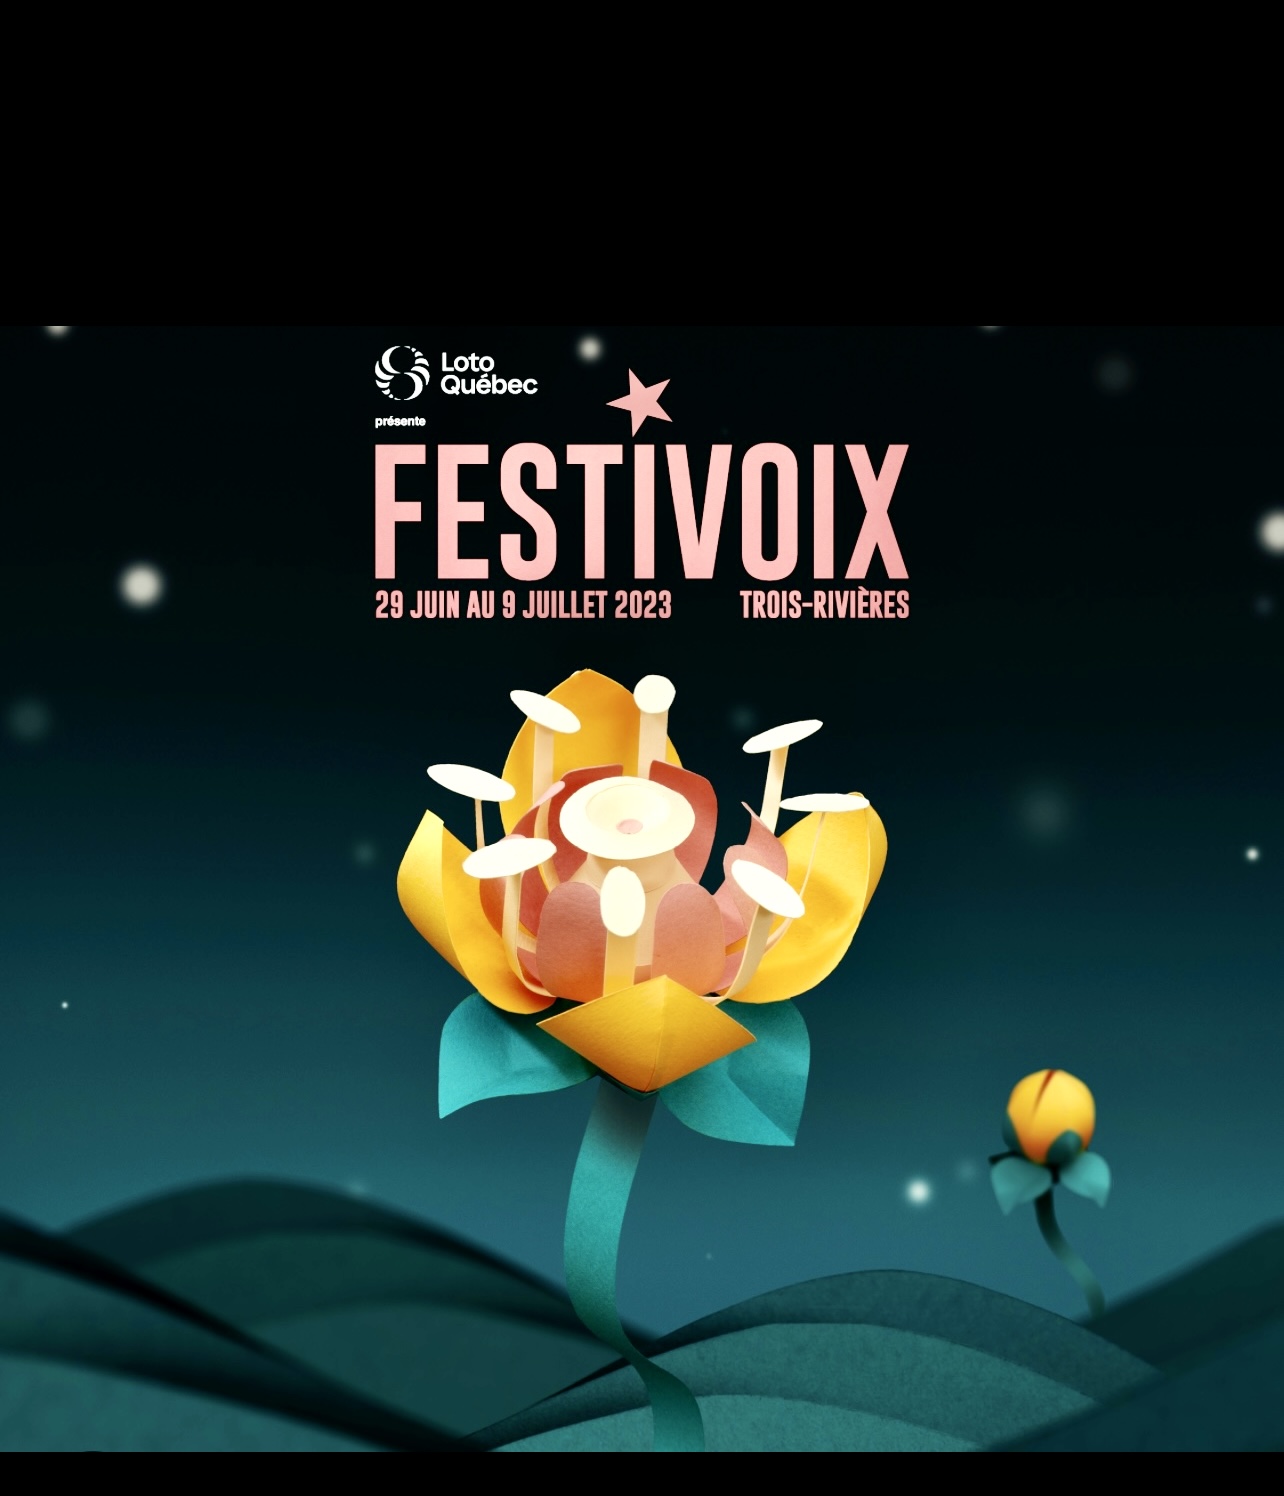 Festivalvoix - capture d'écran du FestiVoix de Trois-Rivières 2023.